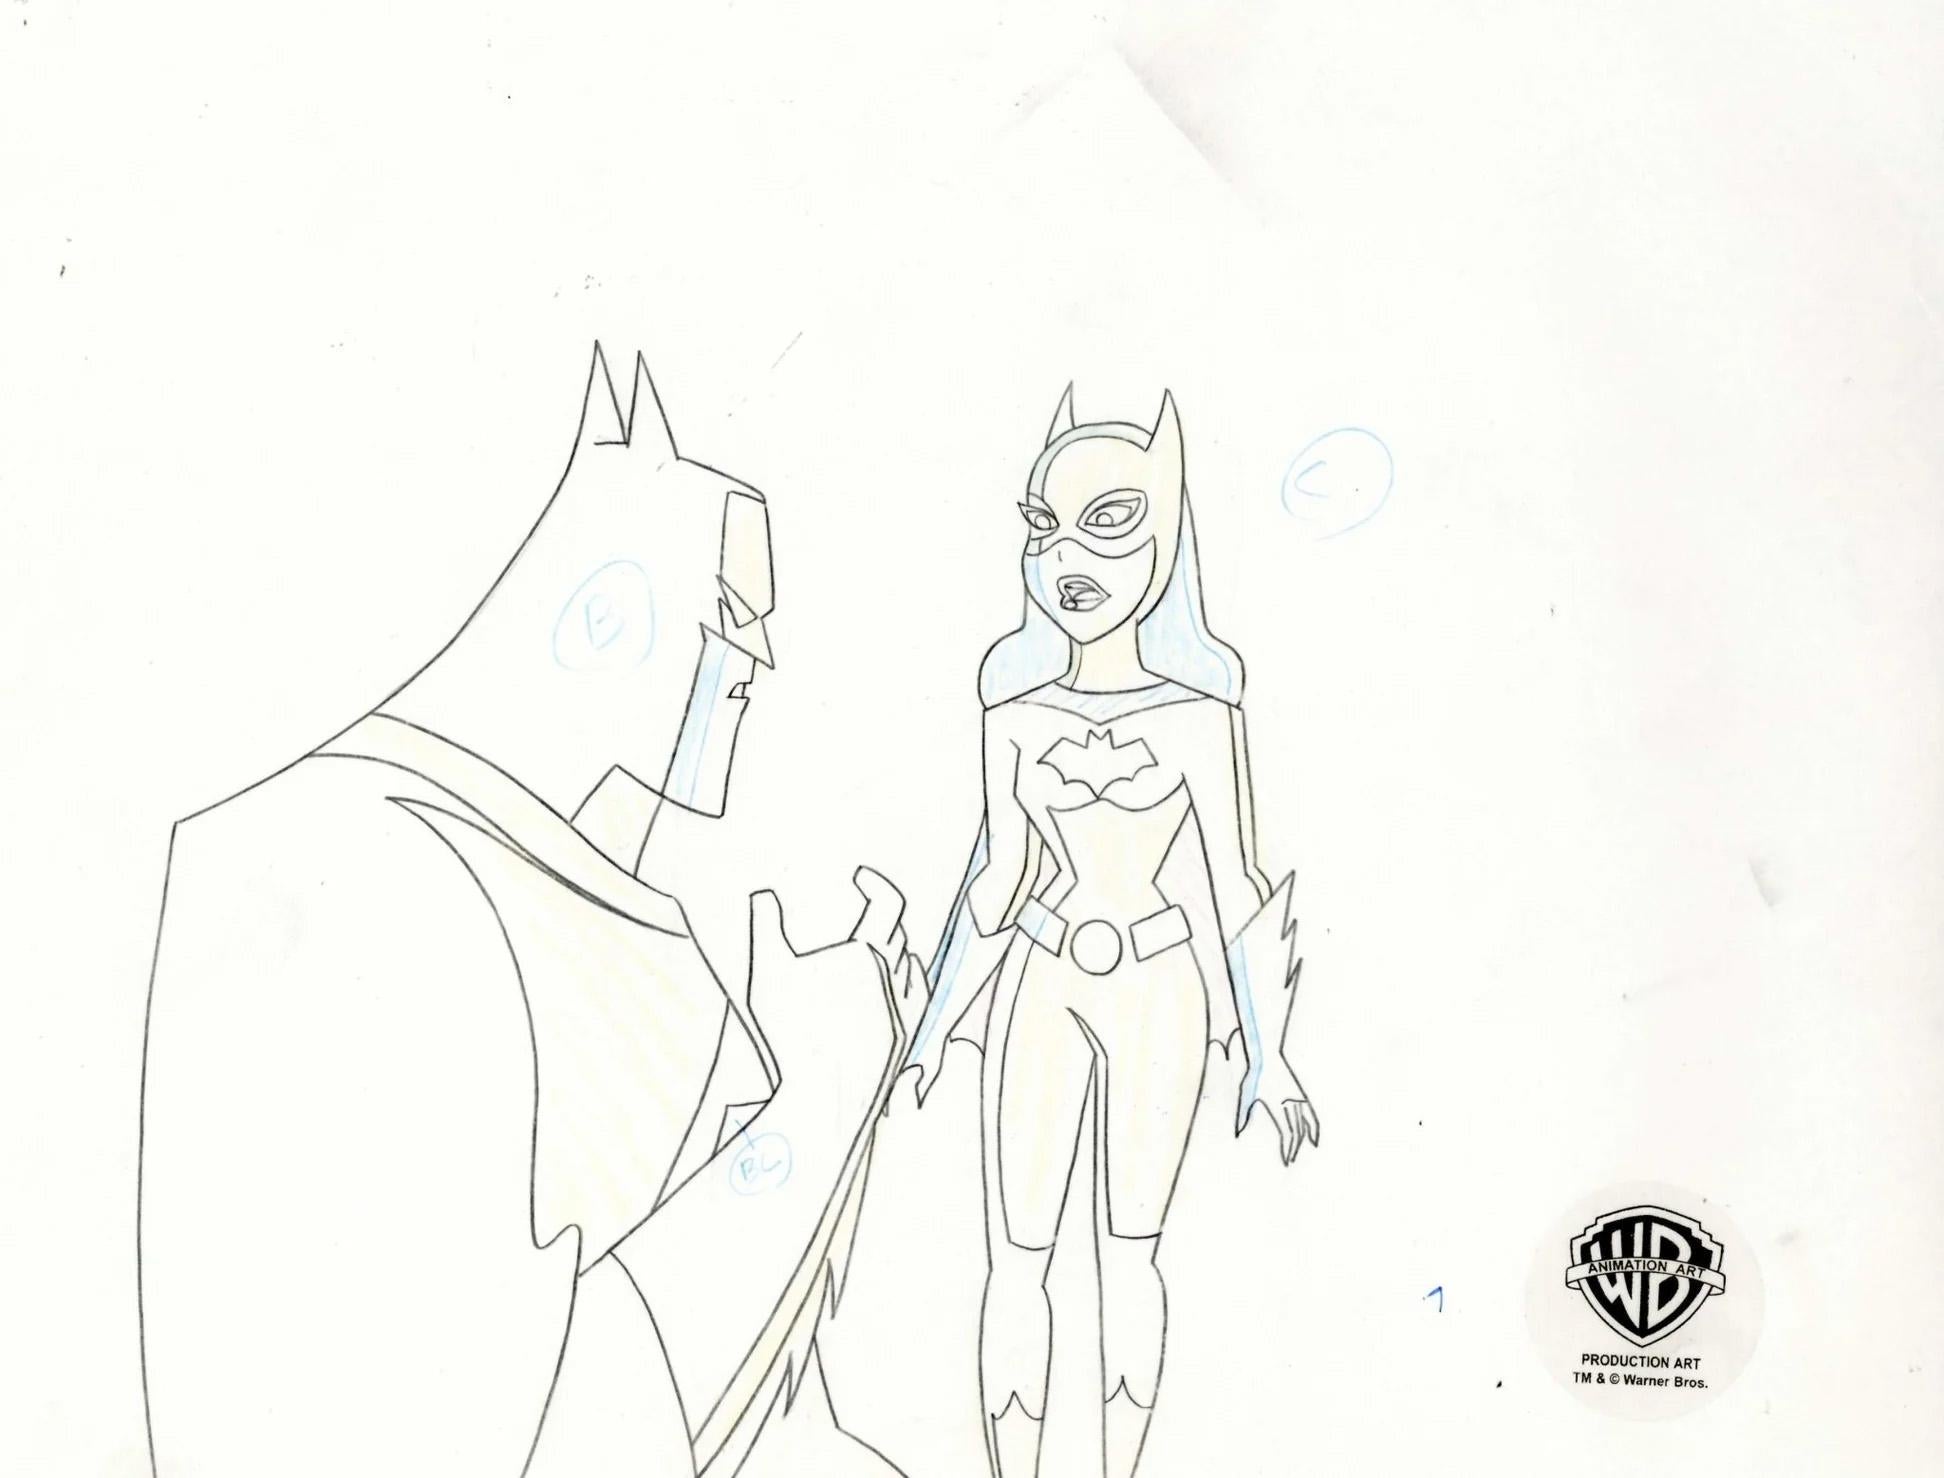 The New Batman Adventures Original Production Drawing: Batman and Batgirl - Art by DC Comics Studio Artists